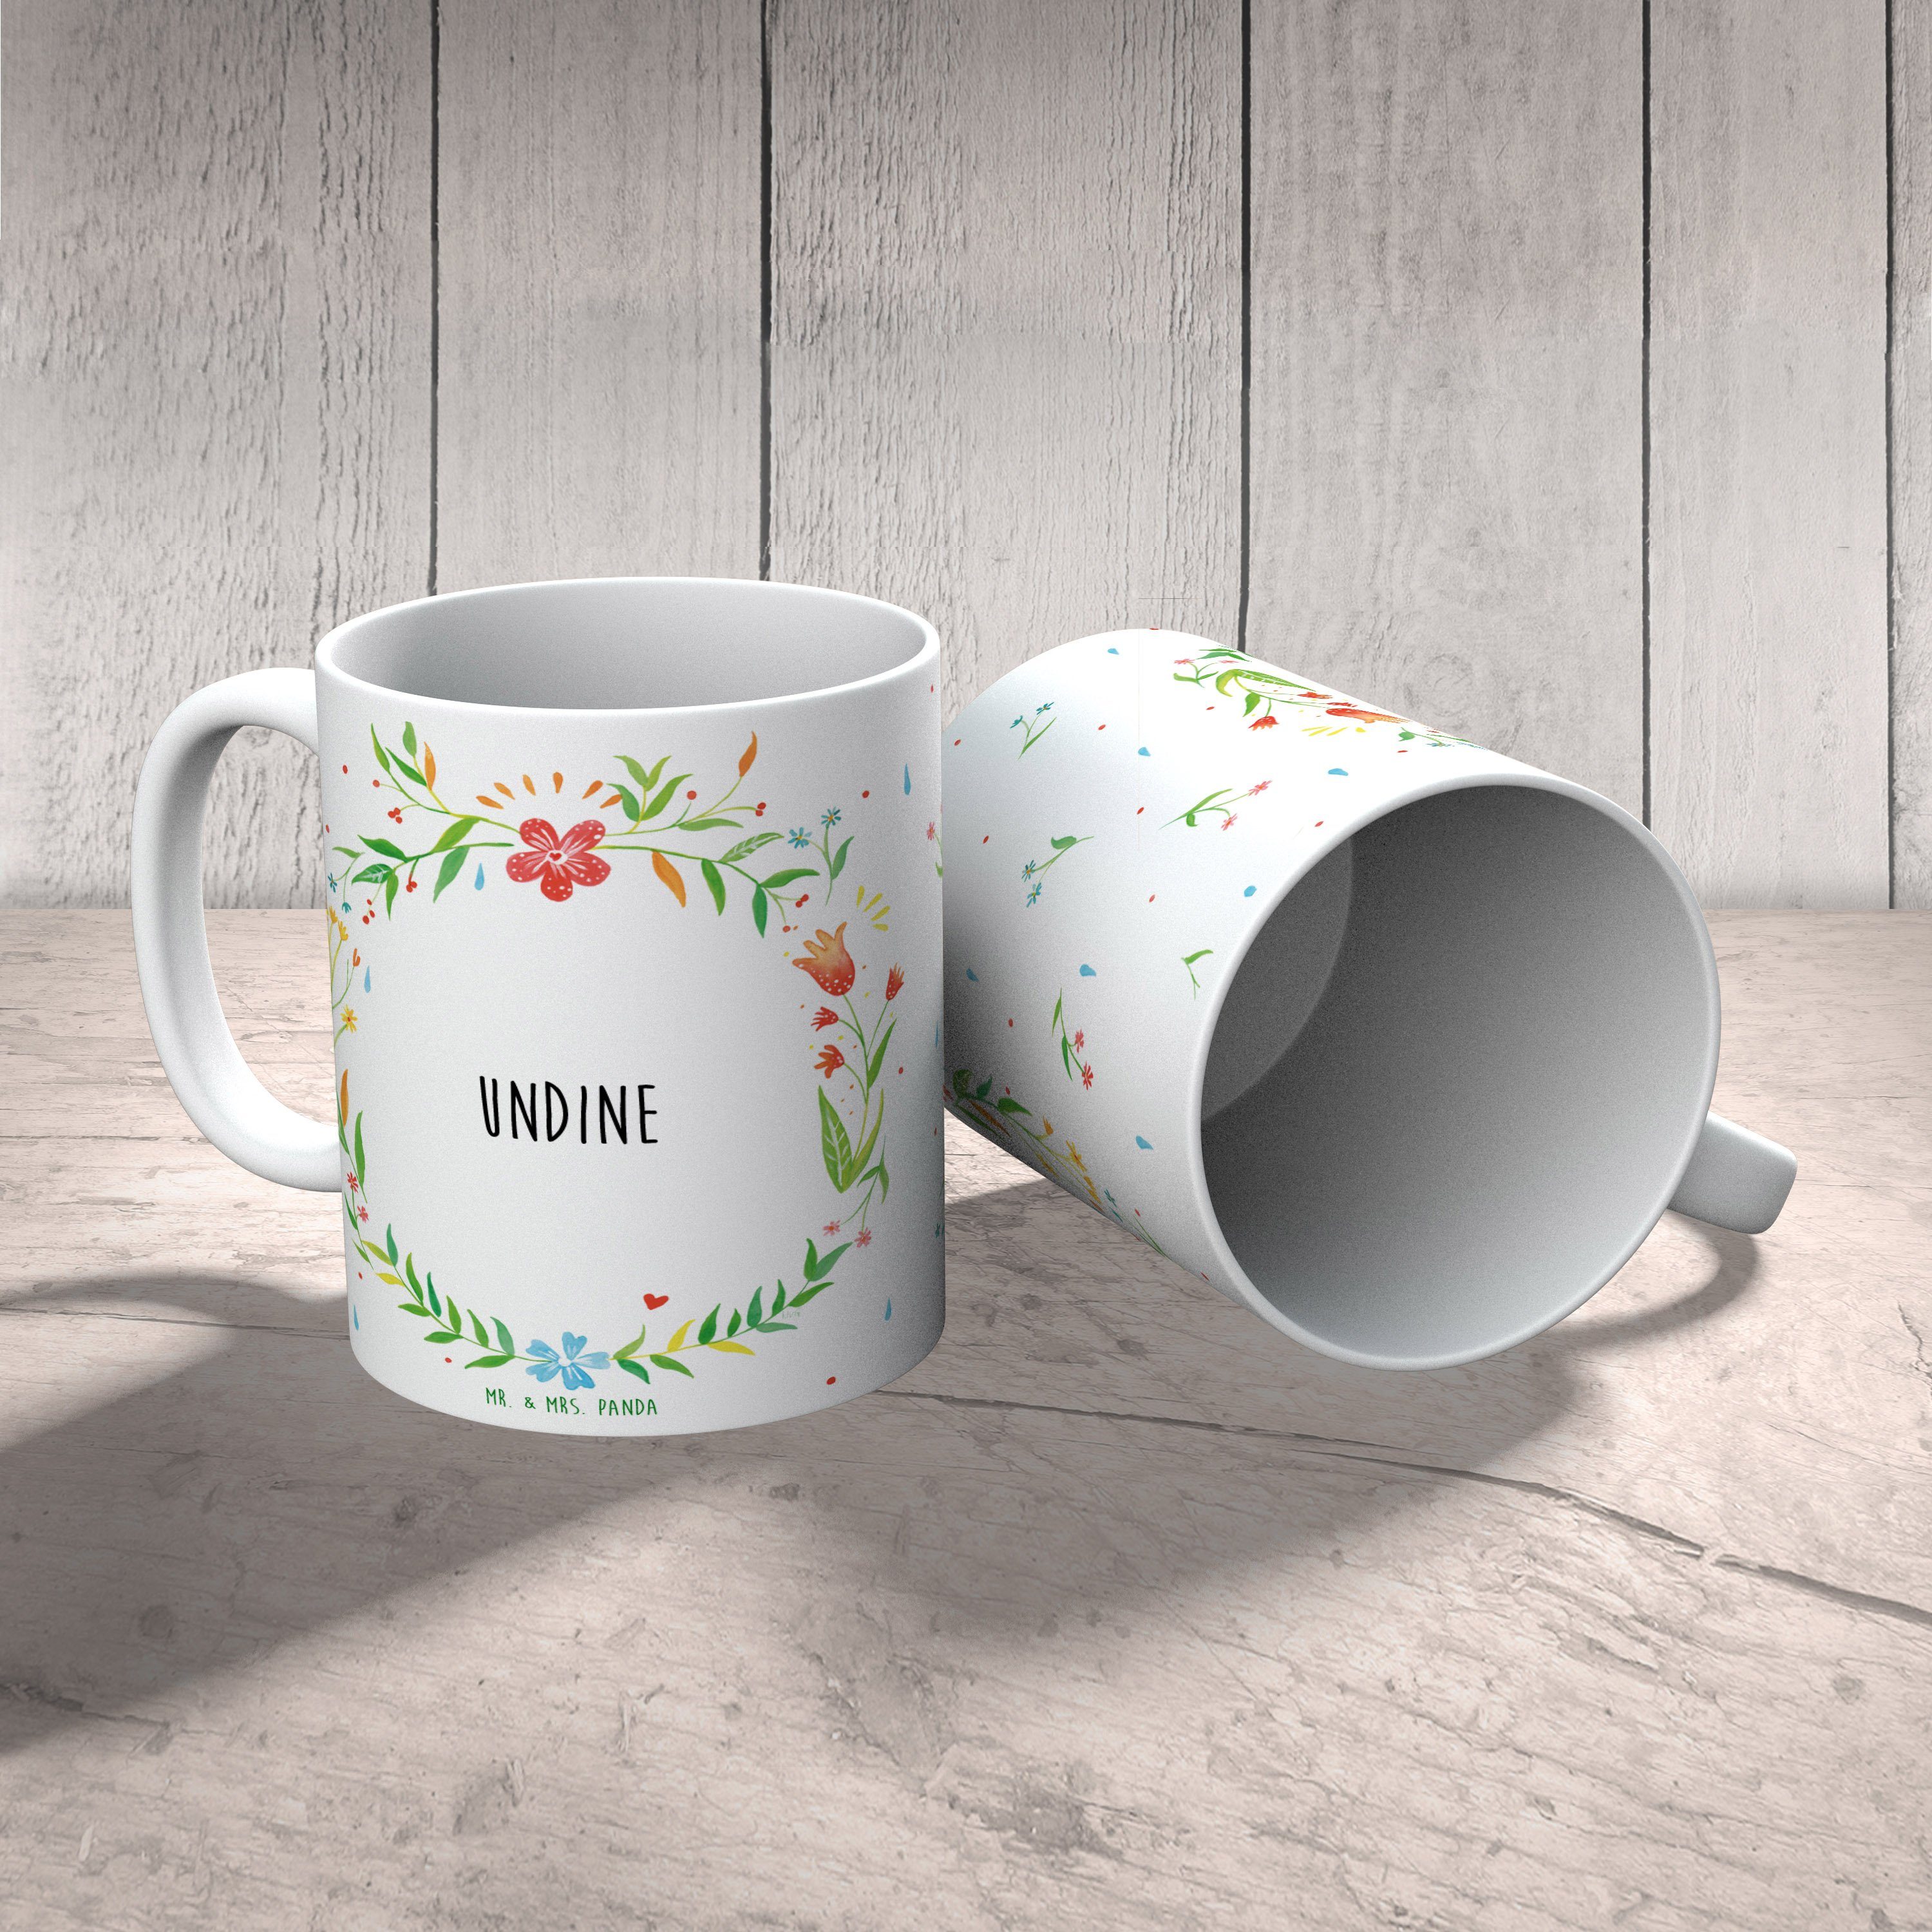 Mr. & Mrs. Panda Tasse Tasse, - Teetasse, Keramik Geschenk, Geschenk Keramiktasse, Undine Tasse, Kaf